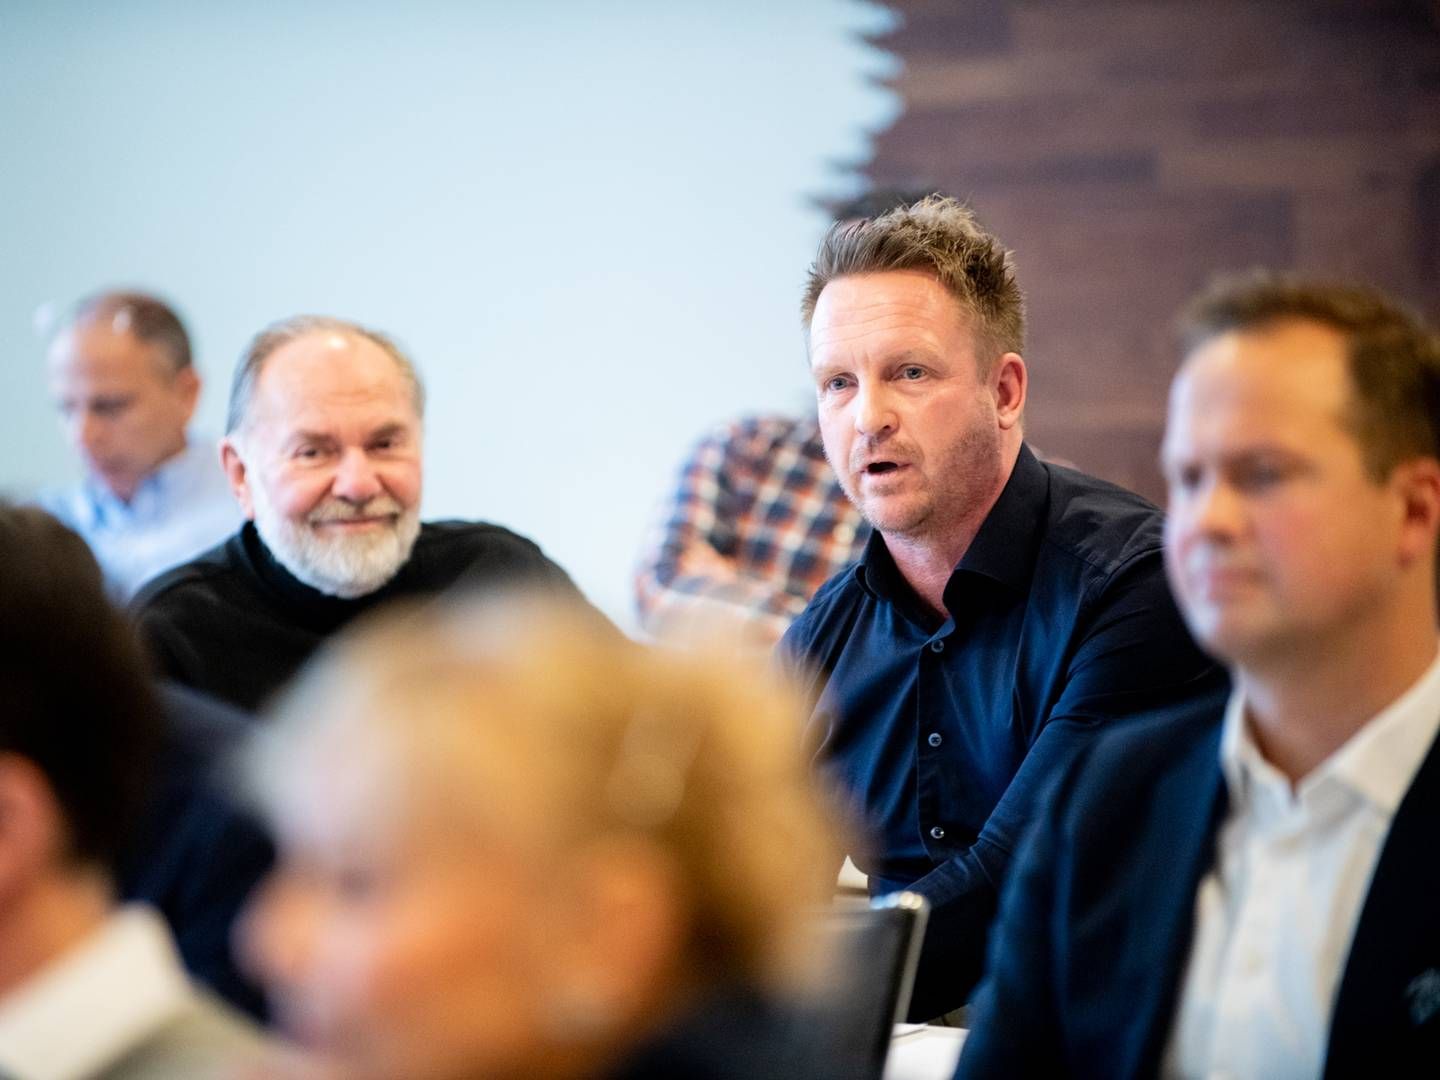 GENERALFORSAMLING: Tirsdag er det generalforsamling i Nordic Nanovector. AG Nanovector og Jon Magne Asmyr (til høyre) mener det blir vanskelig nå som North Energy har kjøpt seg ytterligere opp, men at «slaget ikke er tapt». | Foto: Vidar Sandnes